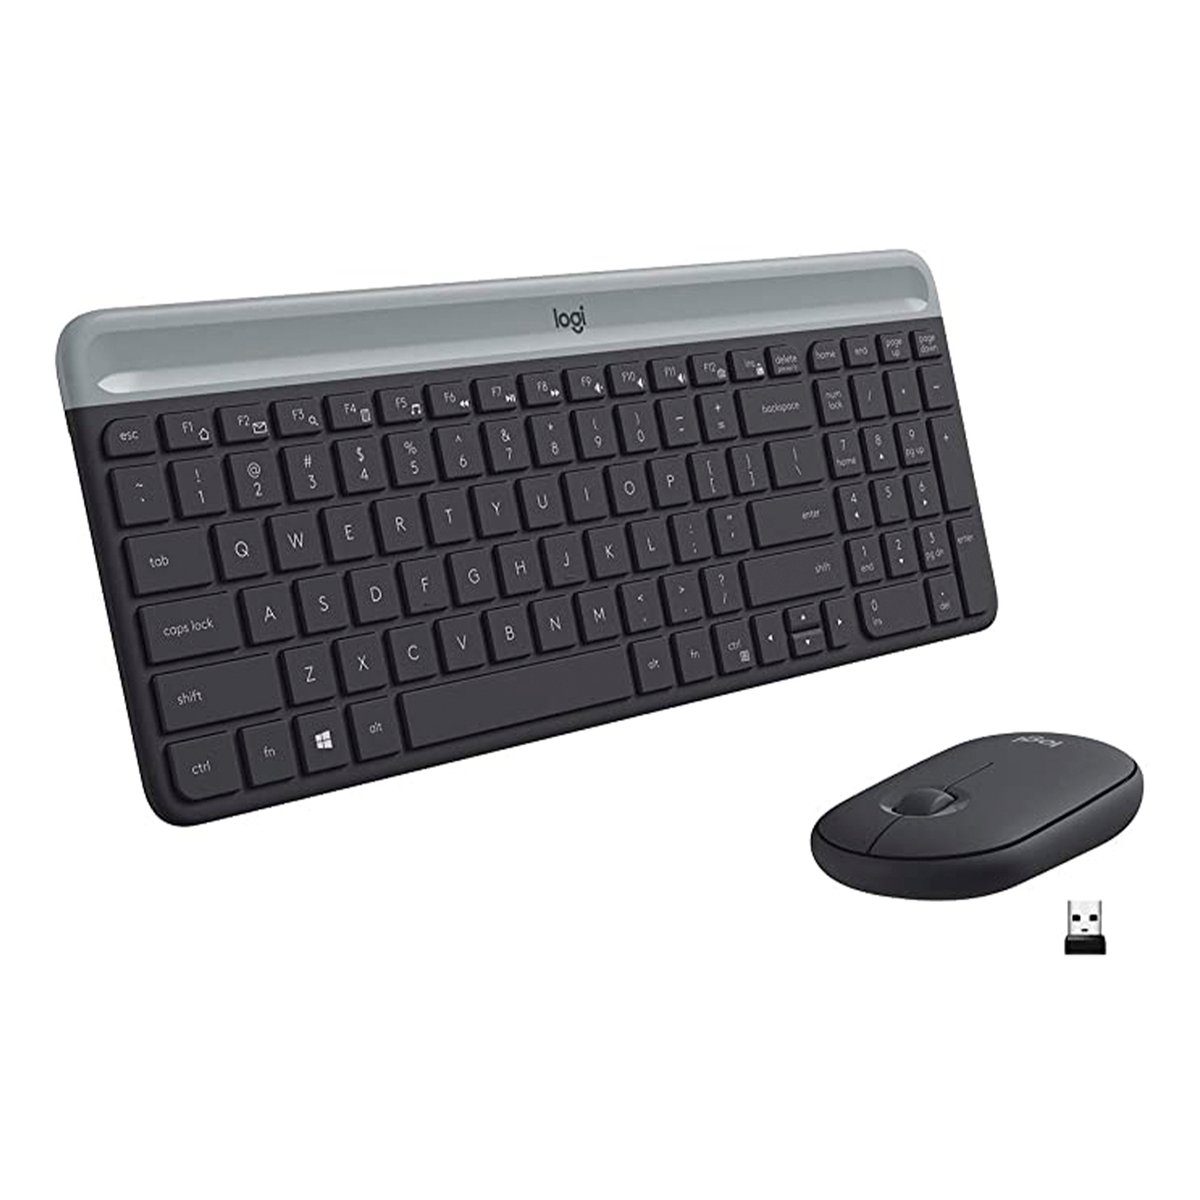 لوحة مفاتيح لوجي تك لا سلكية رفيعة MK470 مع فأرة - اللون أسود